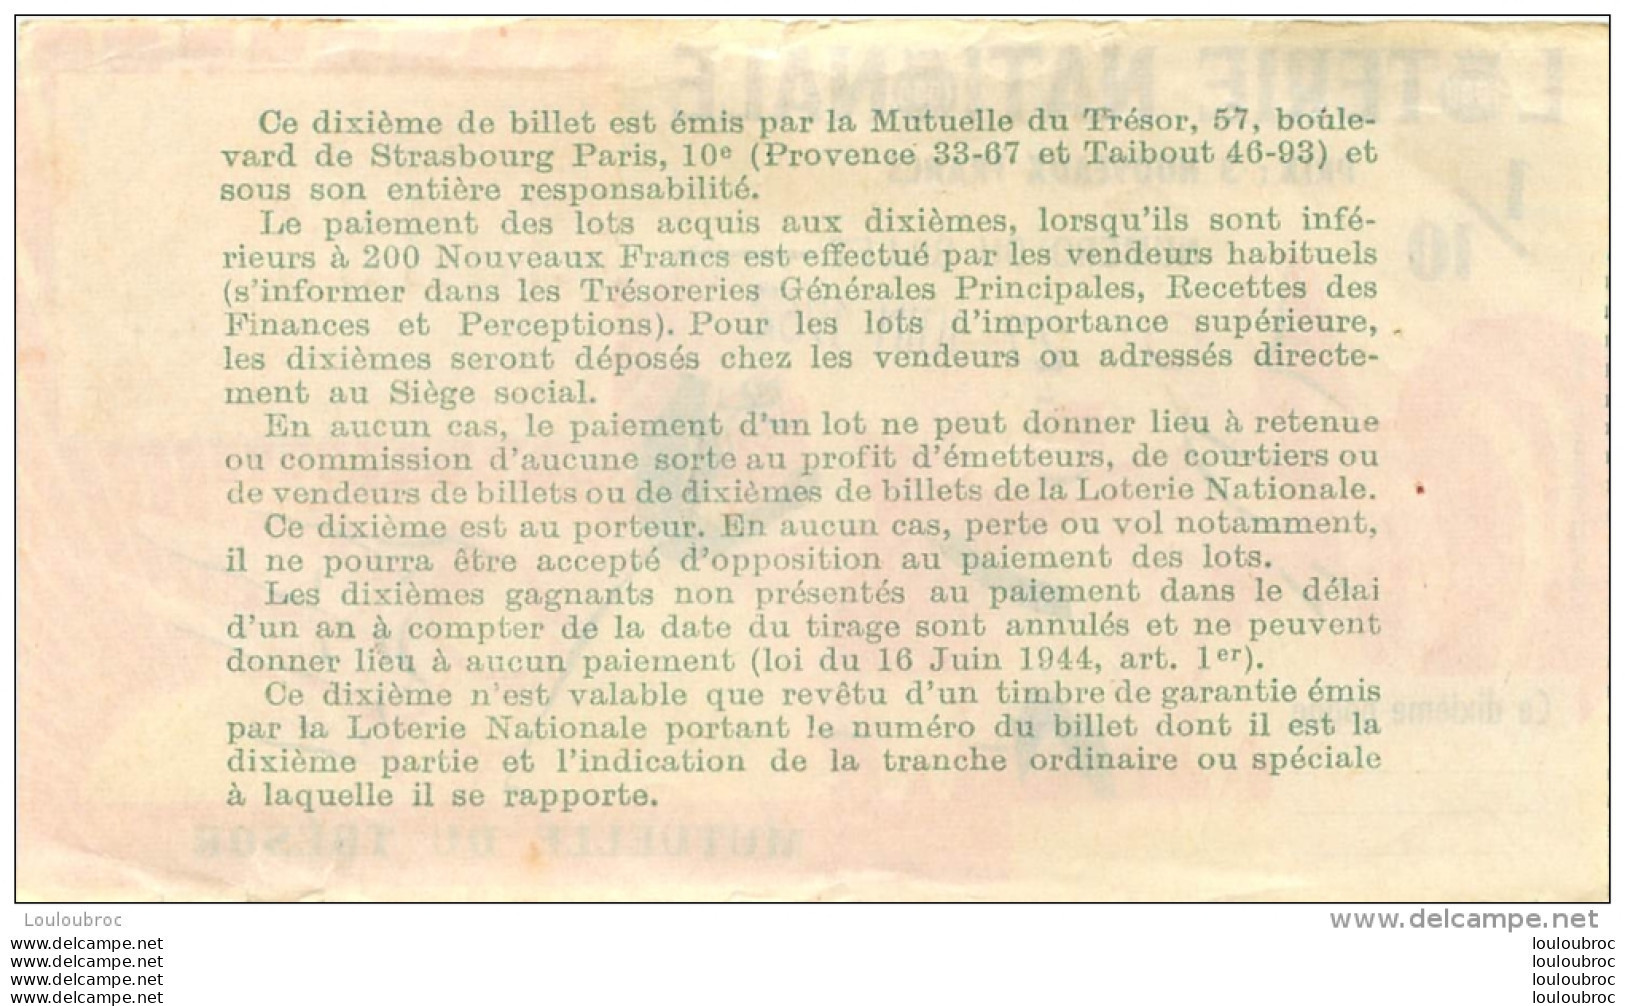 BILLET DE LOTERIE NATIONALE 1962 MUTUELLE DU TRESOR - Lottery Tickets